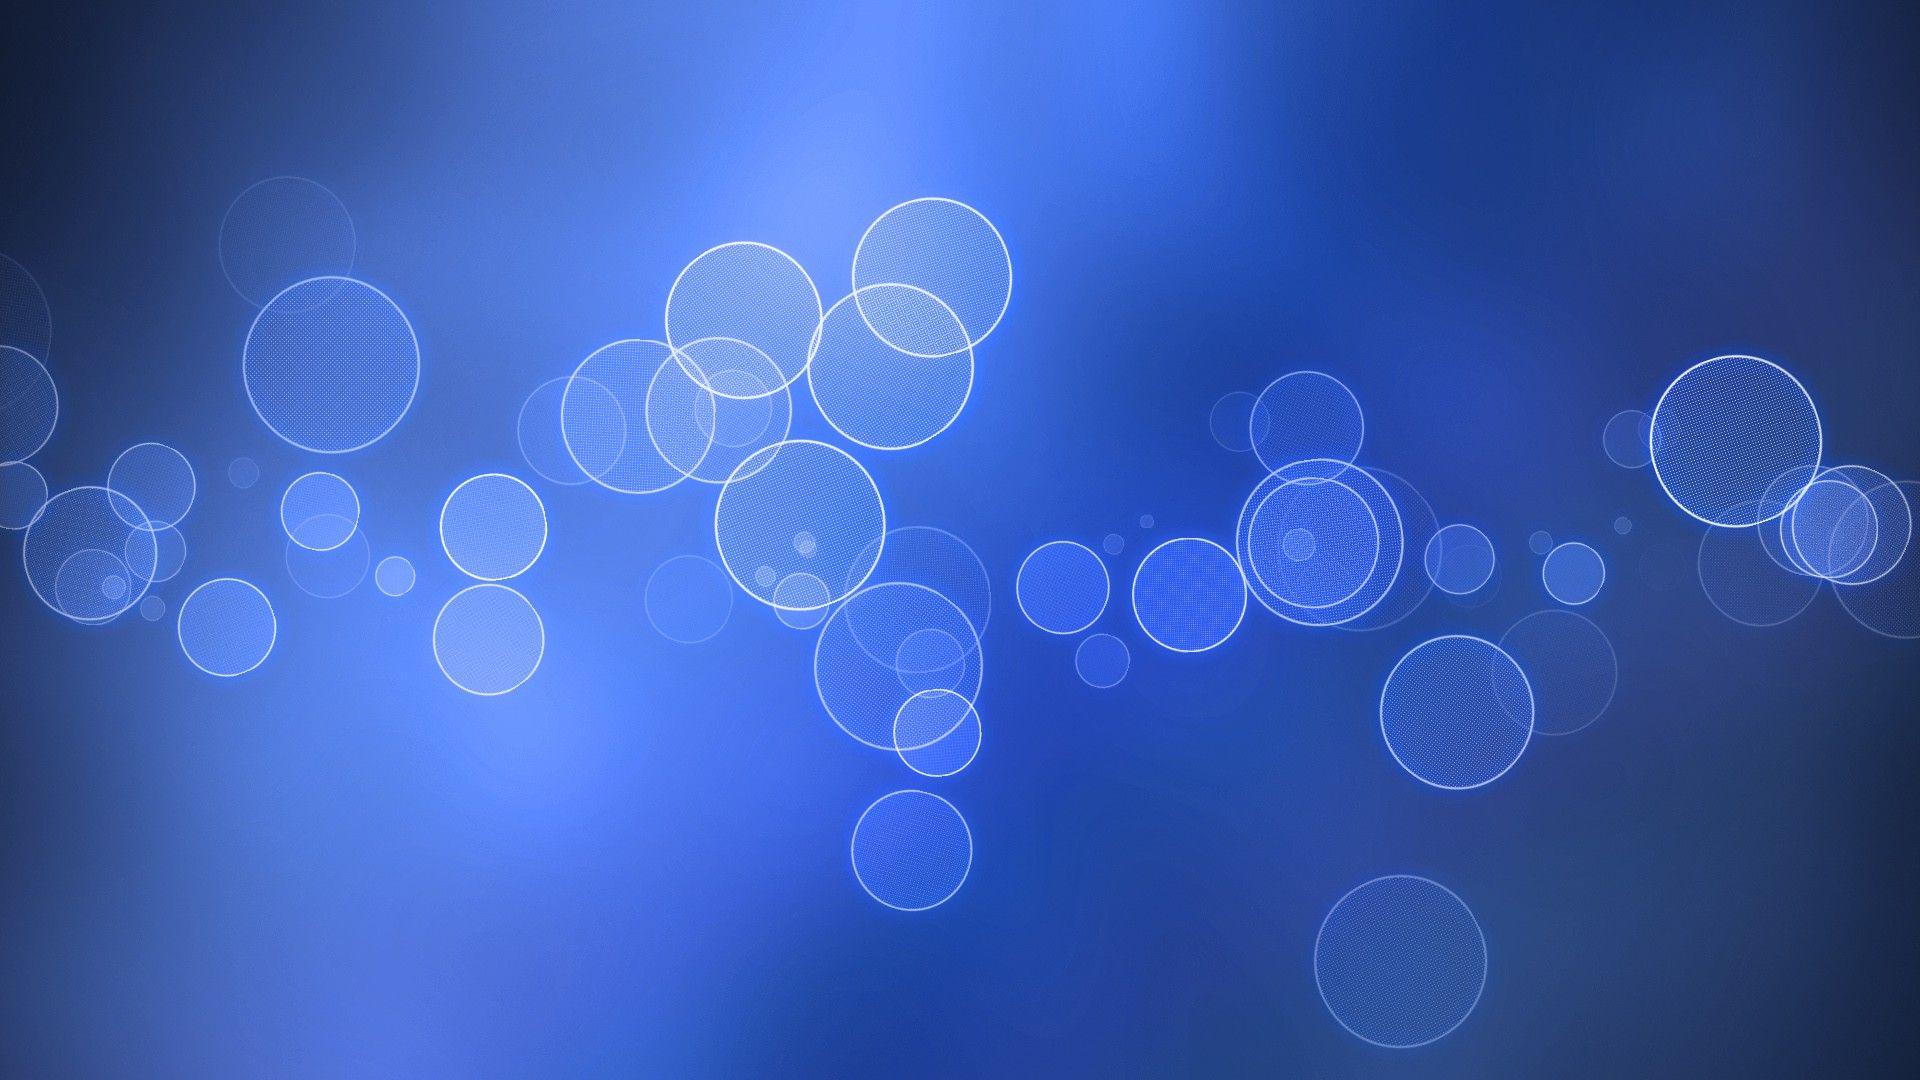 Blue Circle Wallpapers Wallpaper Cave HD Wallpapers Download Free Images Wallpaper [wallpaper981.blogspot.com]